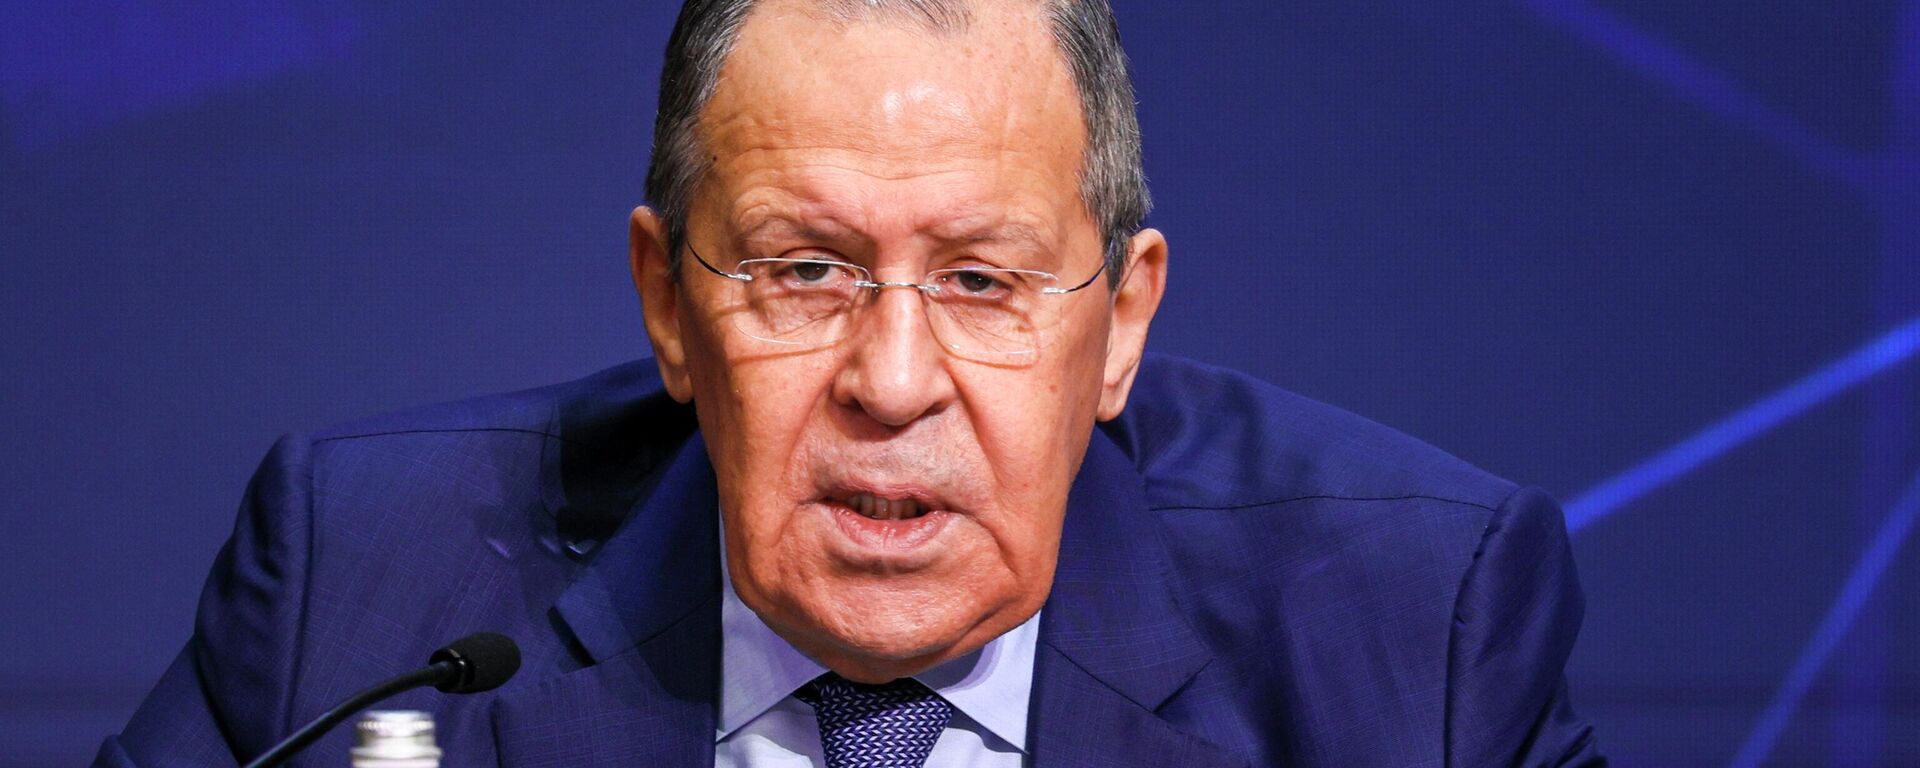 Ministro das Relações Exteriores da Rússia, Sergei Lavrov, participa de conferência sobre relações internacionais, em Moscou, na Rússia, em 14 de abril de 2022. - Sputnik Brasil, 1920, 29.04.2022